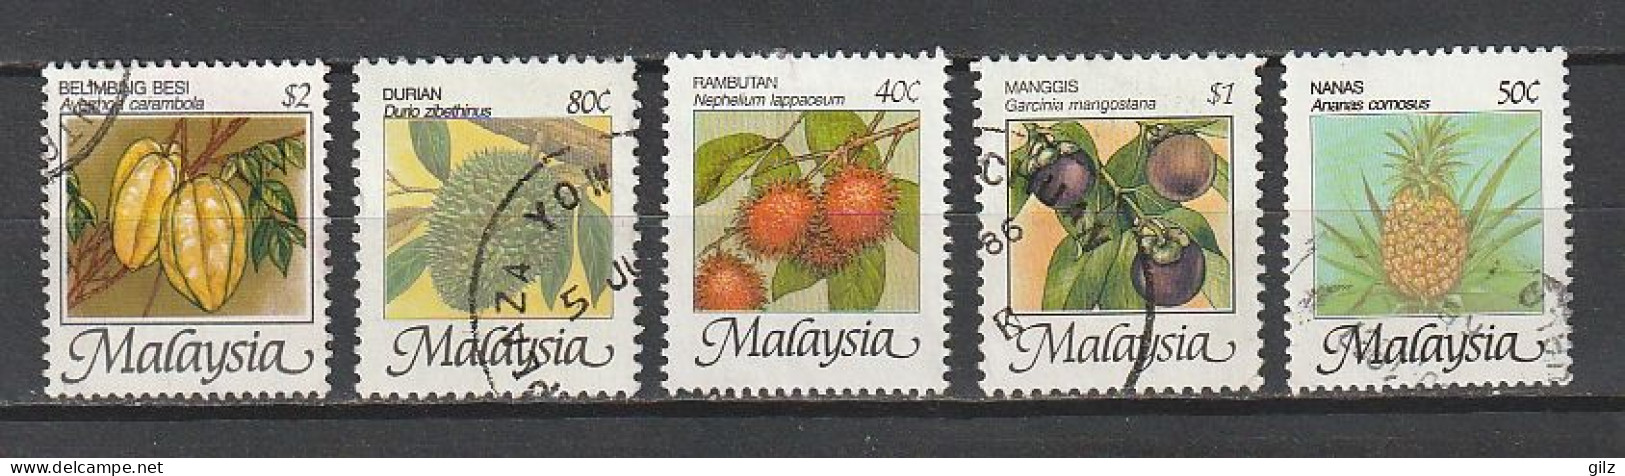 Malaysia 1986 Fruits - Malaysia (1964-...)